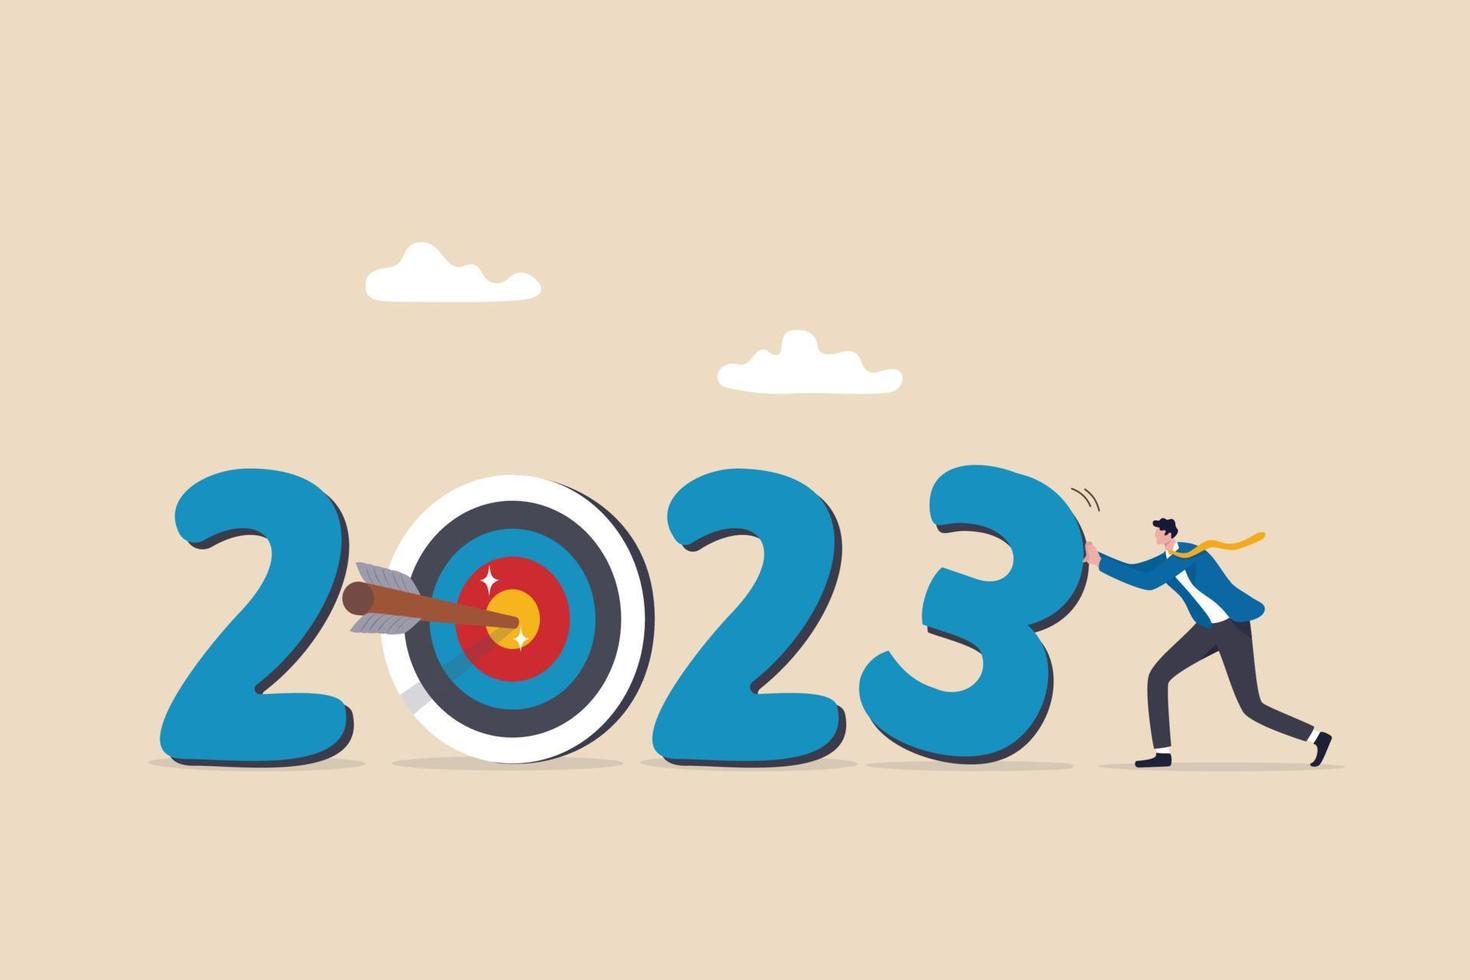 anno 2023 attività commerciale obbiettivo, nuovo anno risoluzione o sfida per raggiungere obiettivo, scopo per attività commerciale successo, crescita o motivazione per avere successo concetto, uomo d'affari mutevole anno per 2023 obbiettivo. vettore